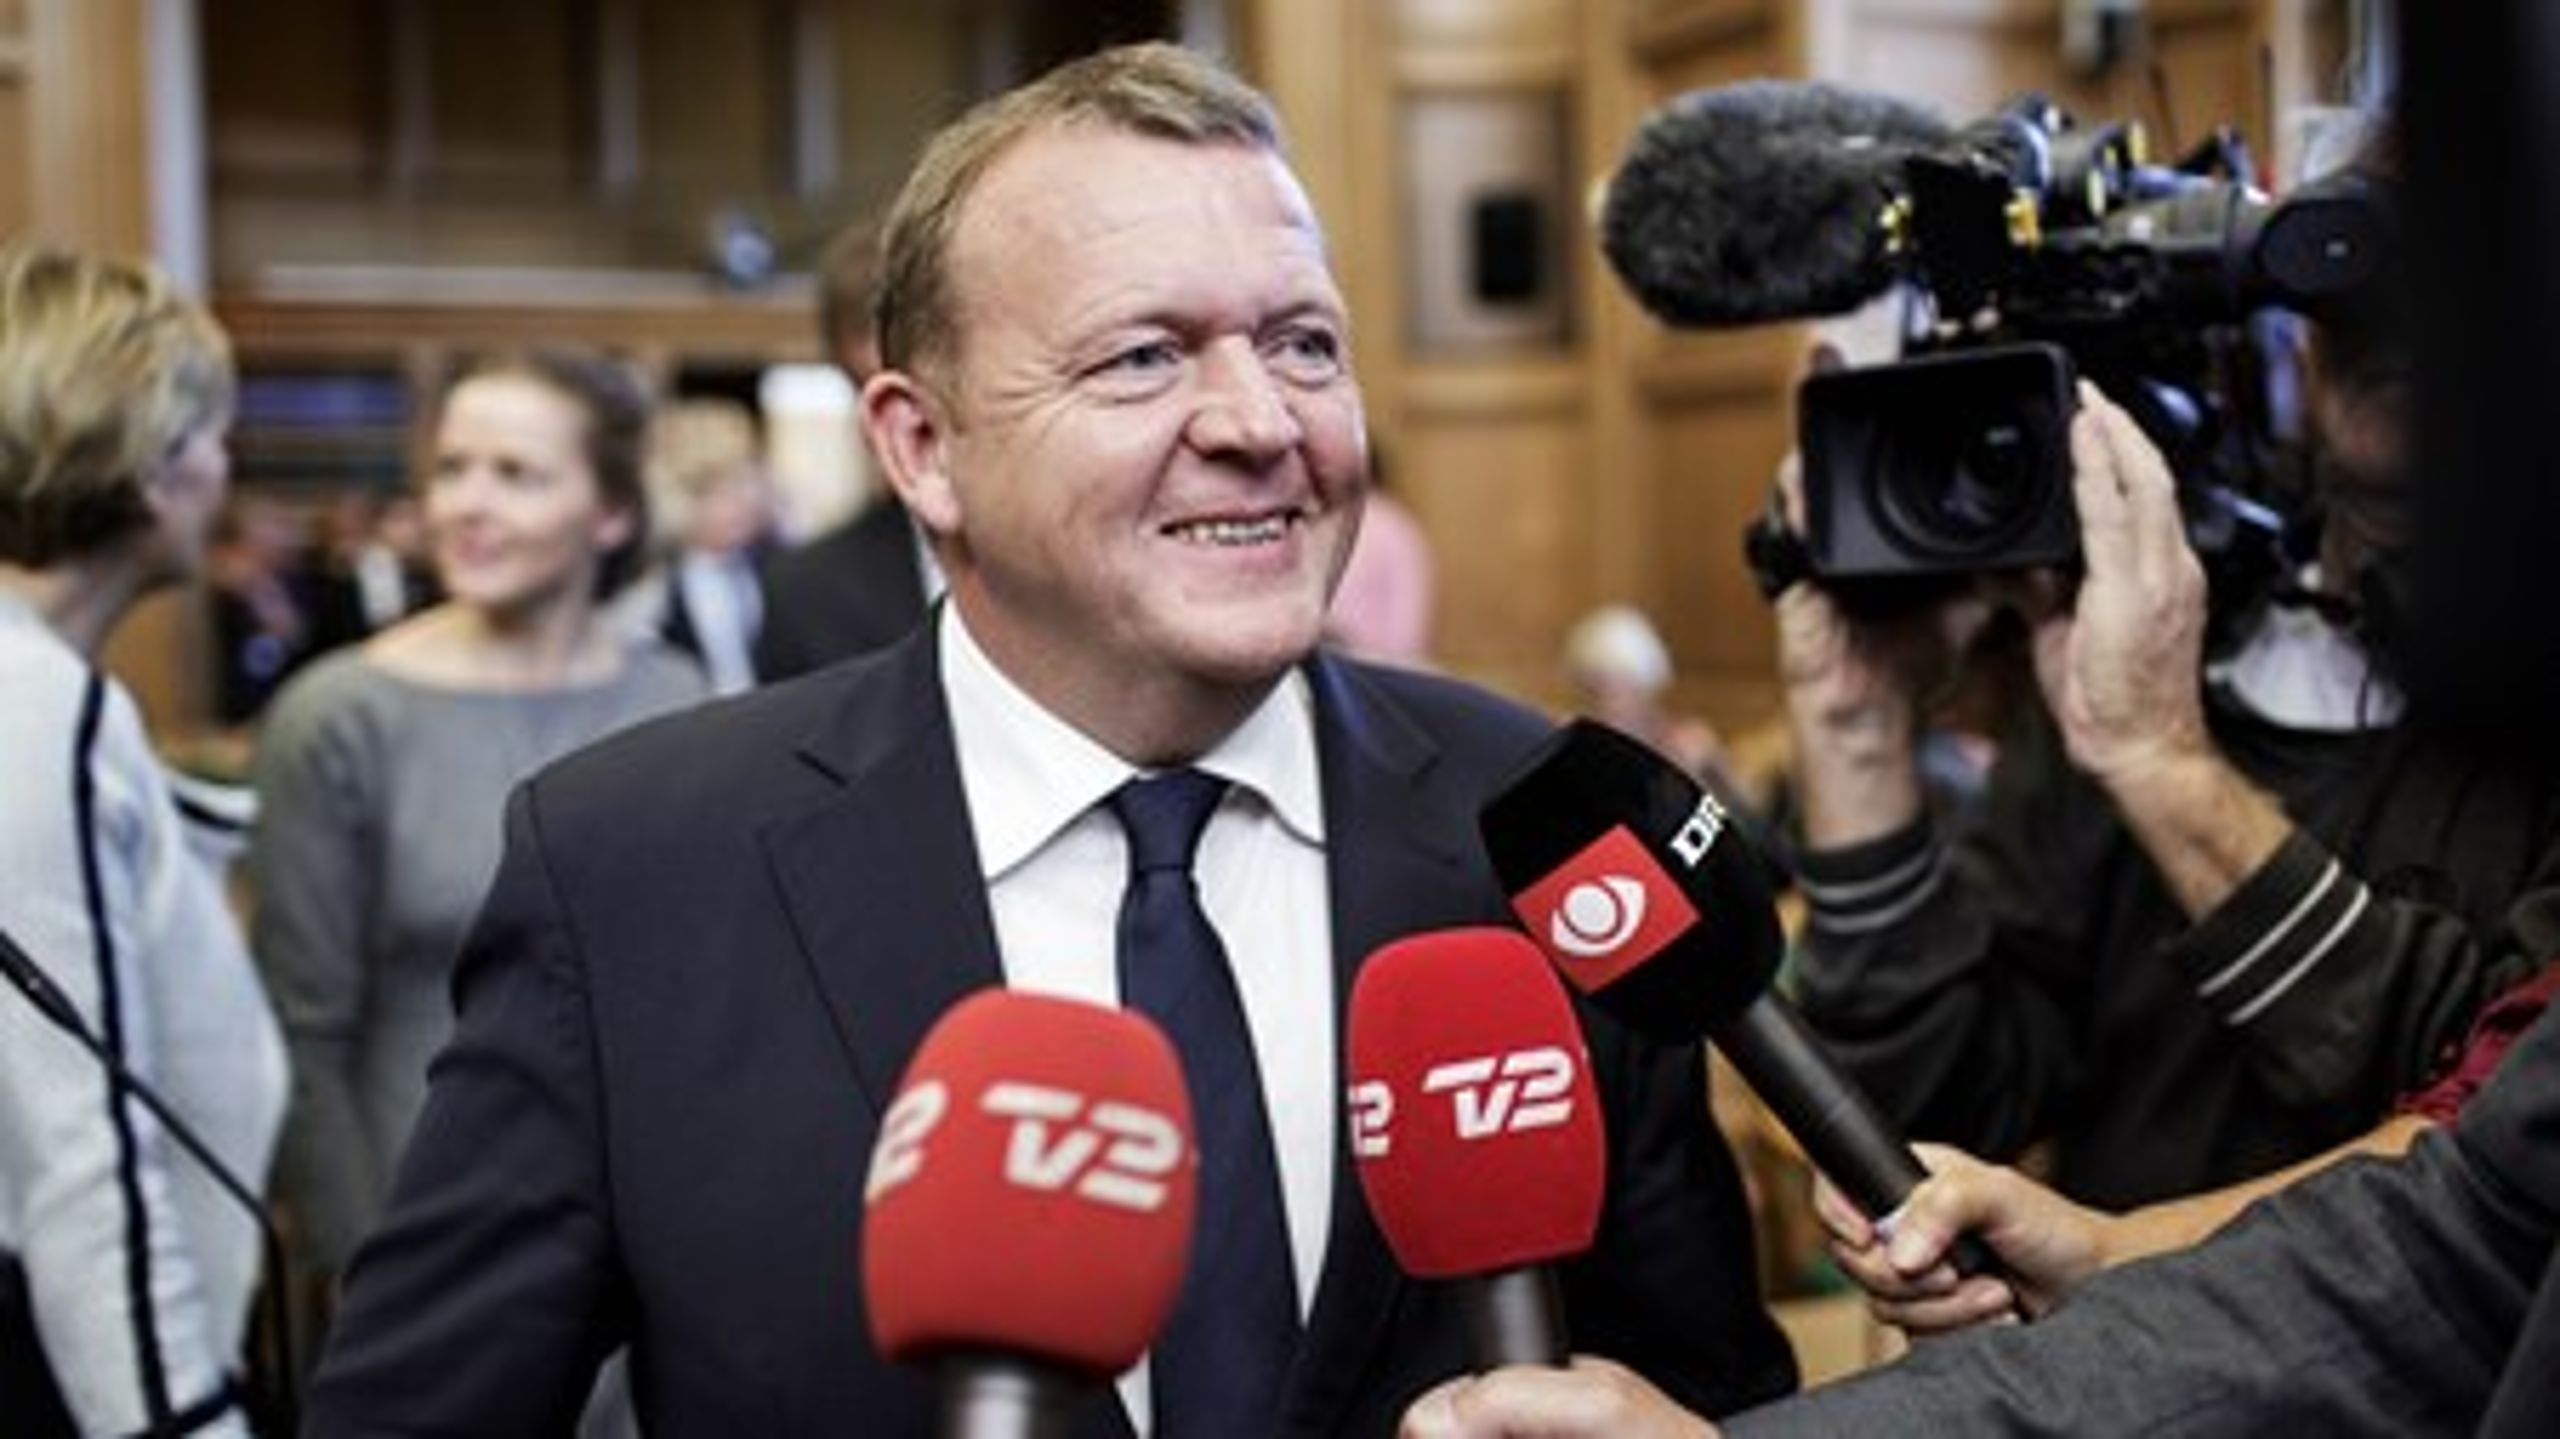 Venstre er igen landets største parti i meningsmålingerne trods den interne kritik af V-formand Lars Løkke før sommerferien.